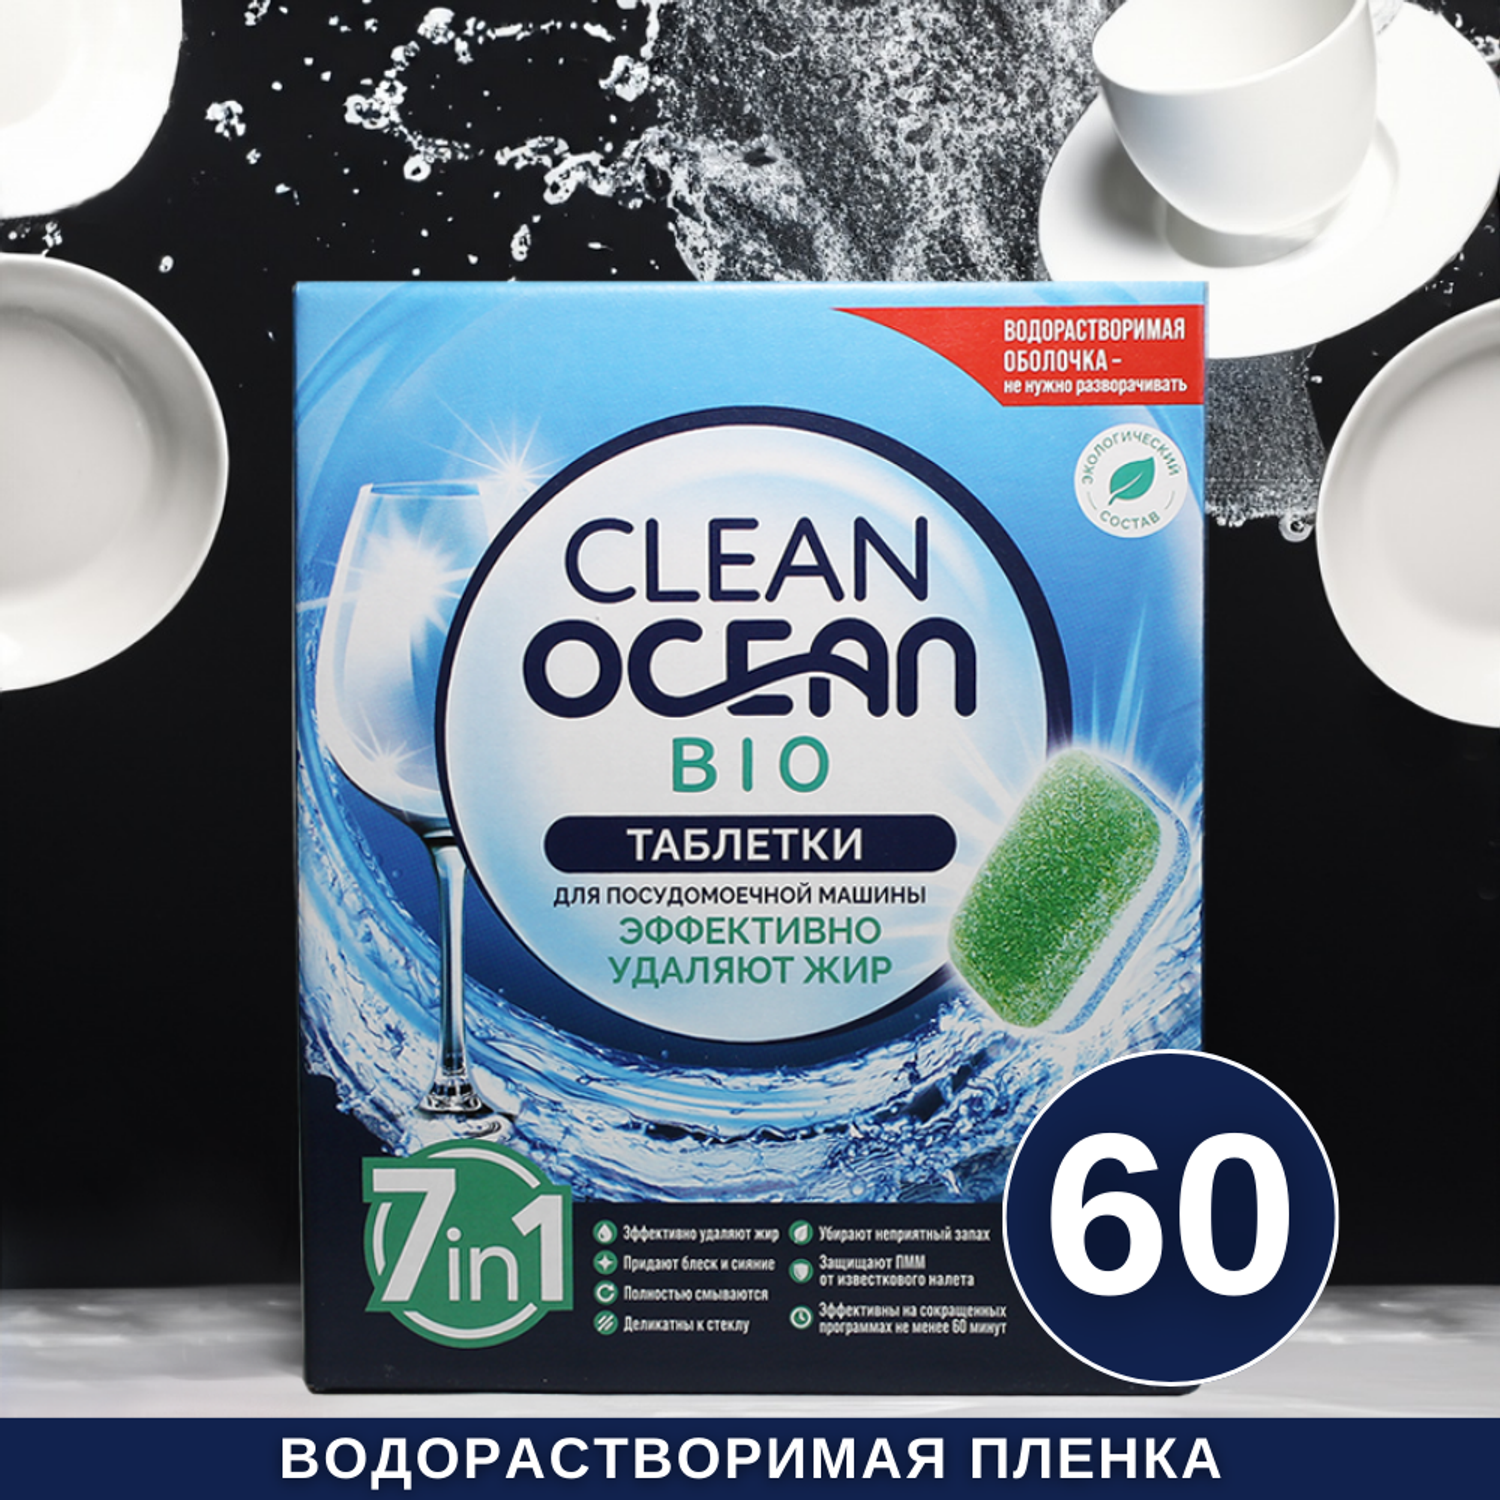 Таблетки Laboratory KATRIN Ocean Clean bio для посудомоечной машины в водорастворимой пленке 60шт - фото 1